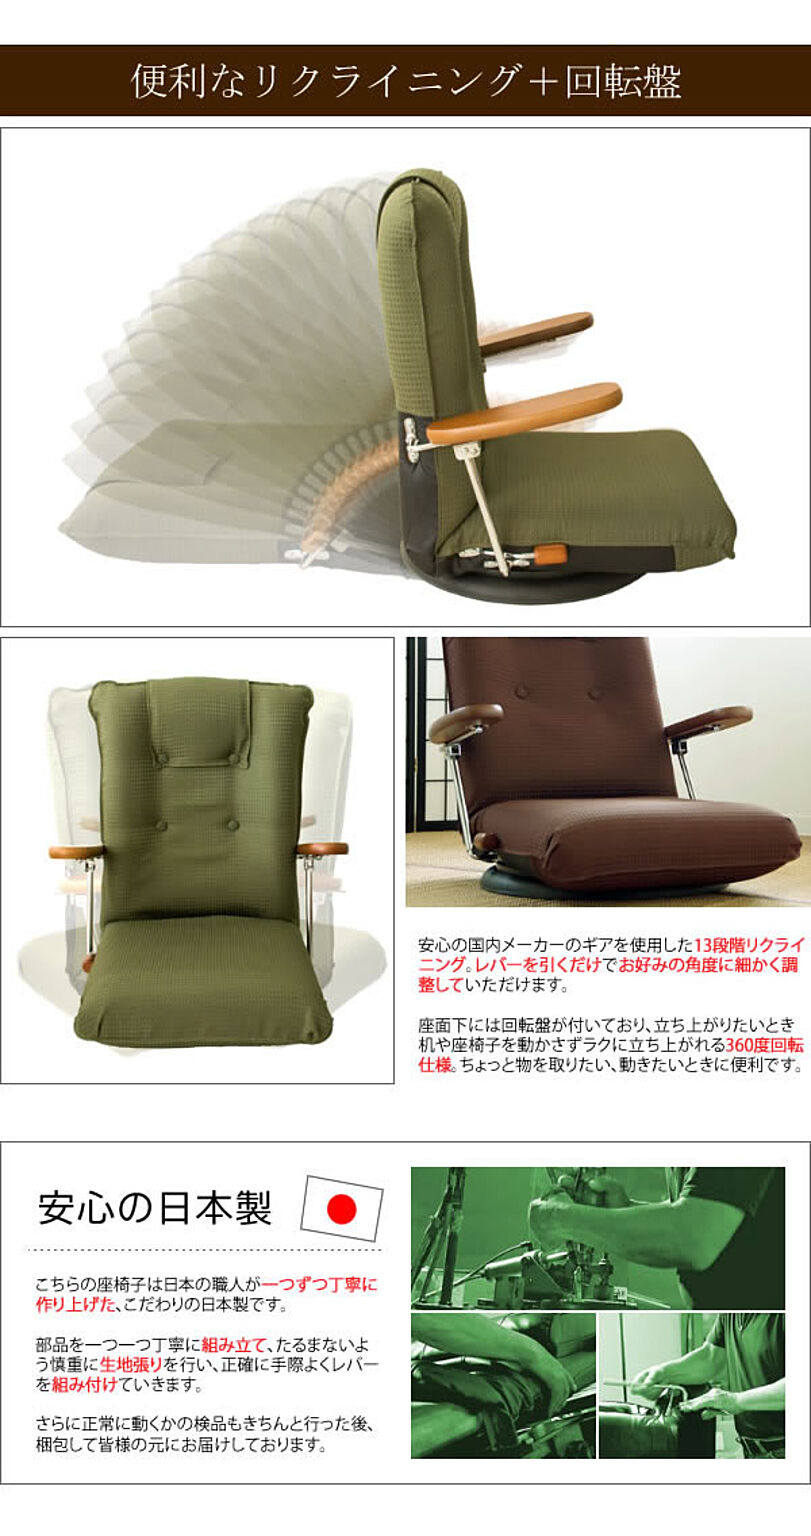 wasura リクライニング座椅子 フロアチェア 肘付き ハイバック 回転式